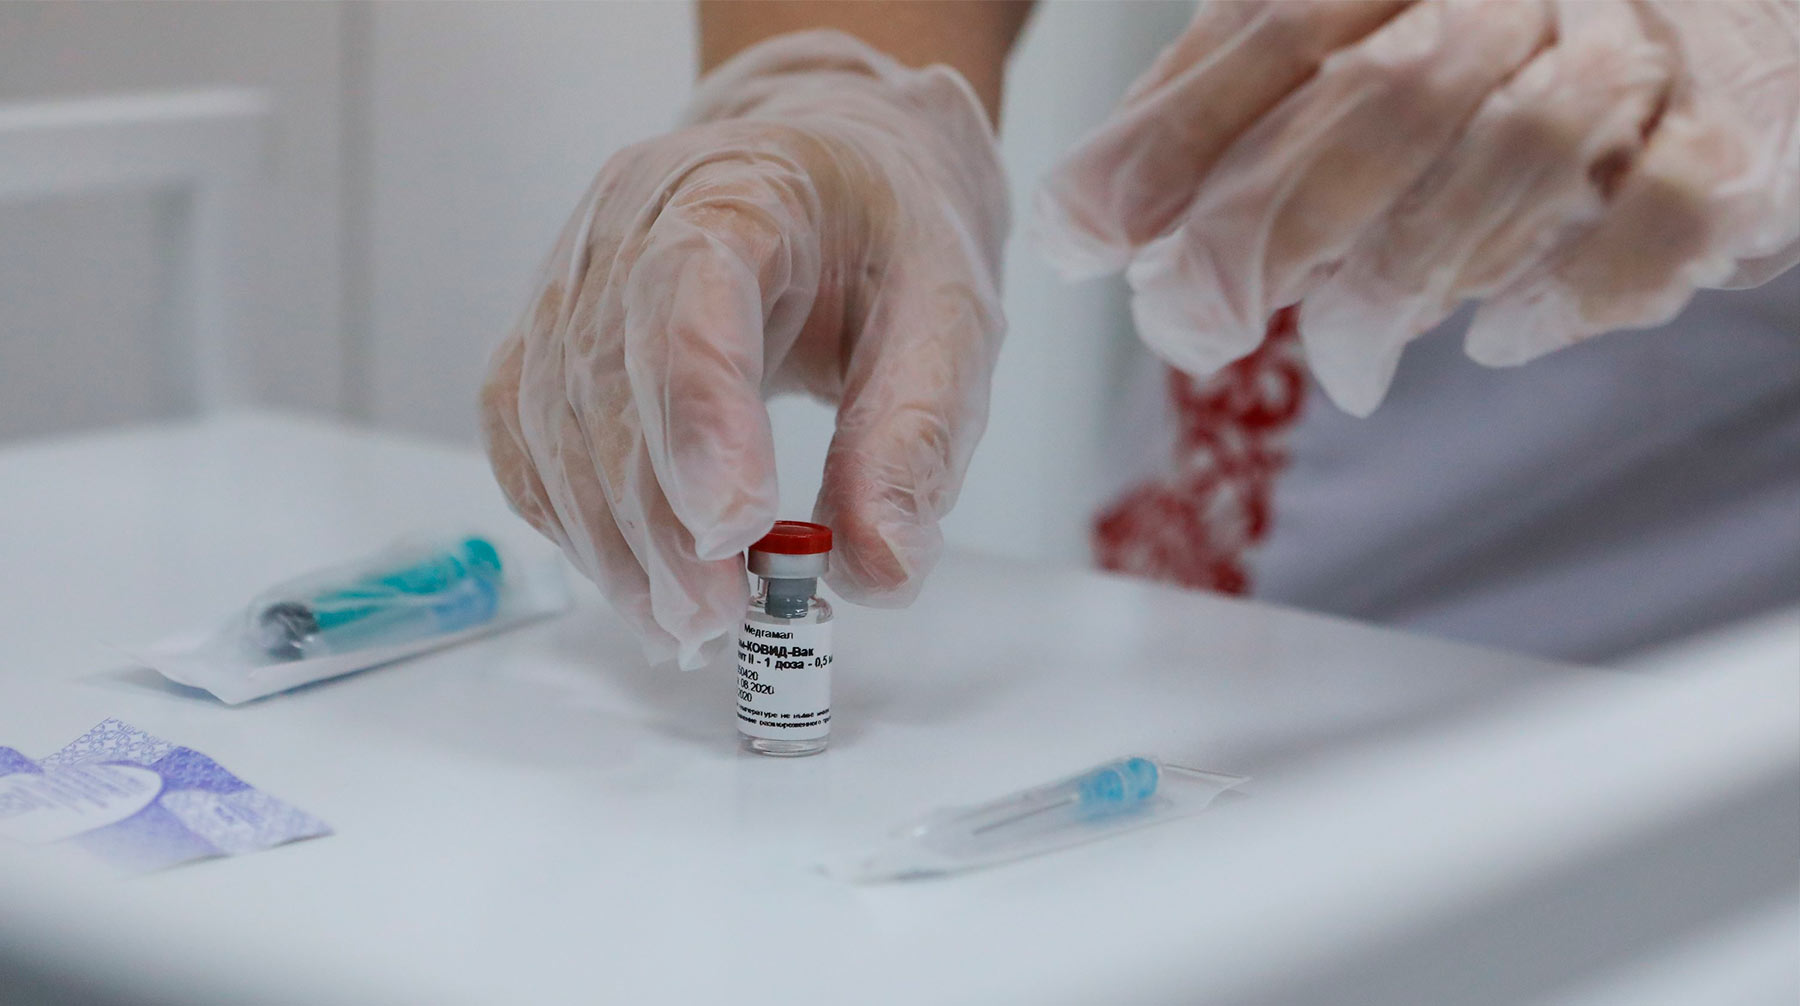 Пункты вакцинации от коронавируса откроются 5 декабря, всего их в столице 70 Фото: © АГН Москва / Софья Сандурская